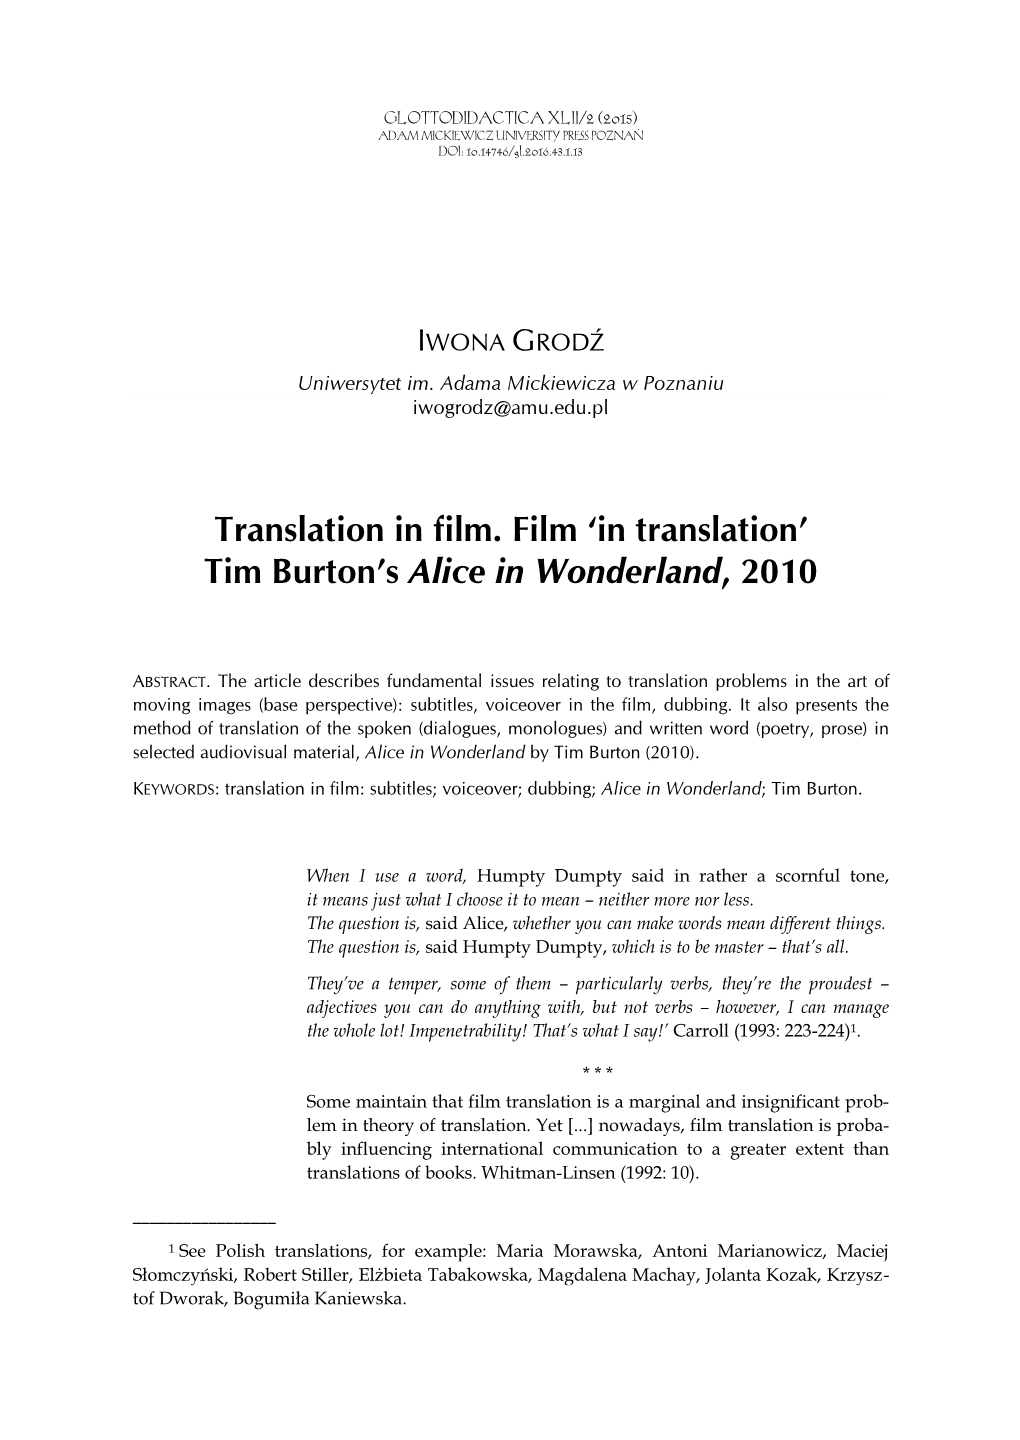 Translation in Film. Film ‘In Translation’ Tim Burton’S Alice in Wonderland, 2010